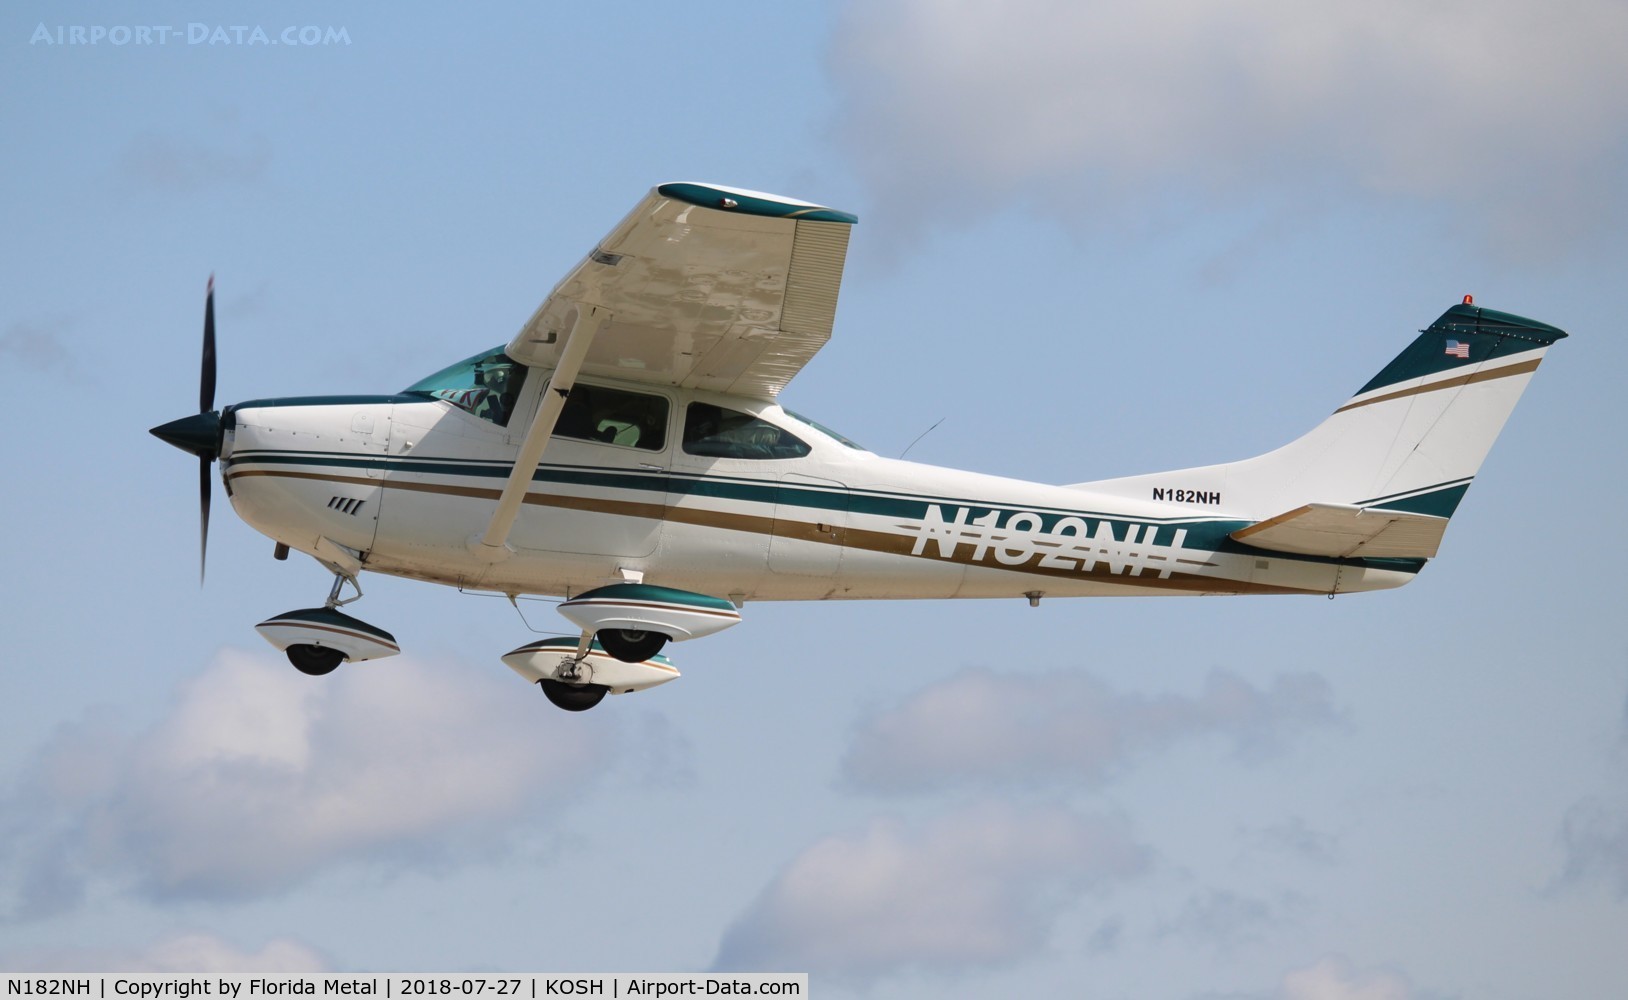 N182NH, 1969 Cessna 182N Skylane C/N 18260148, C182 classic zx